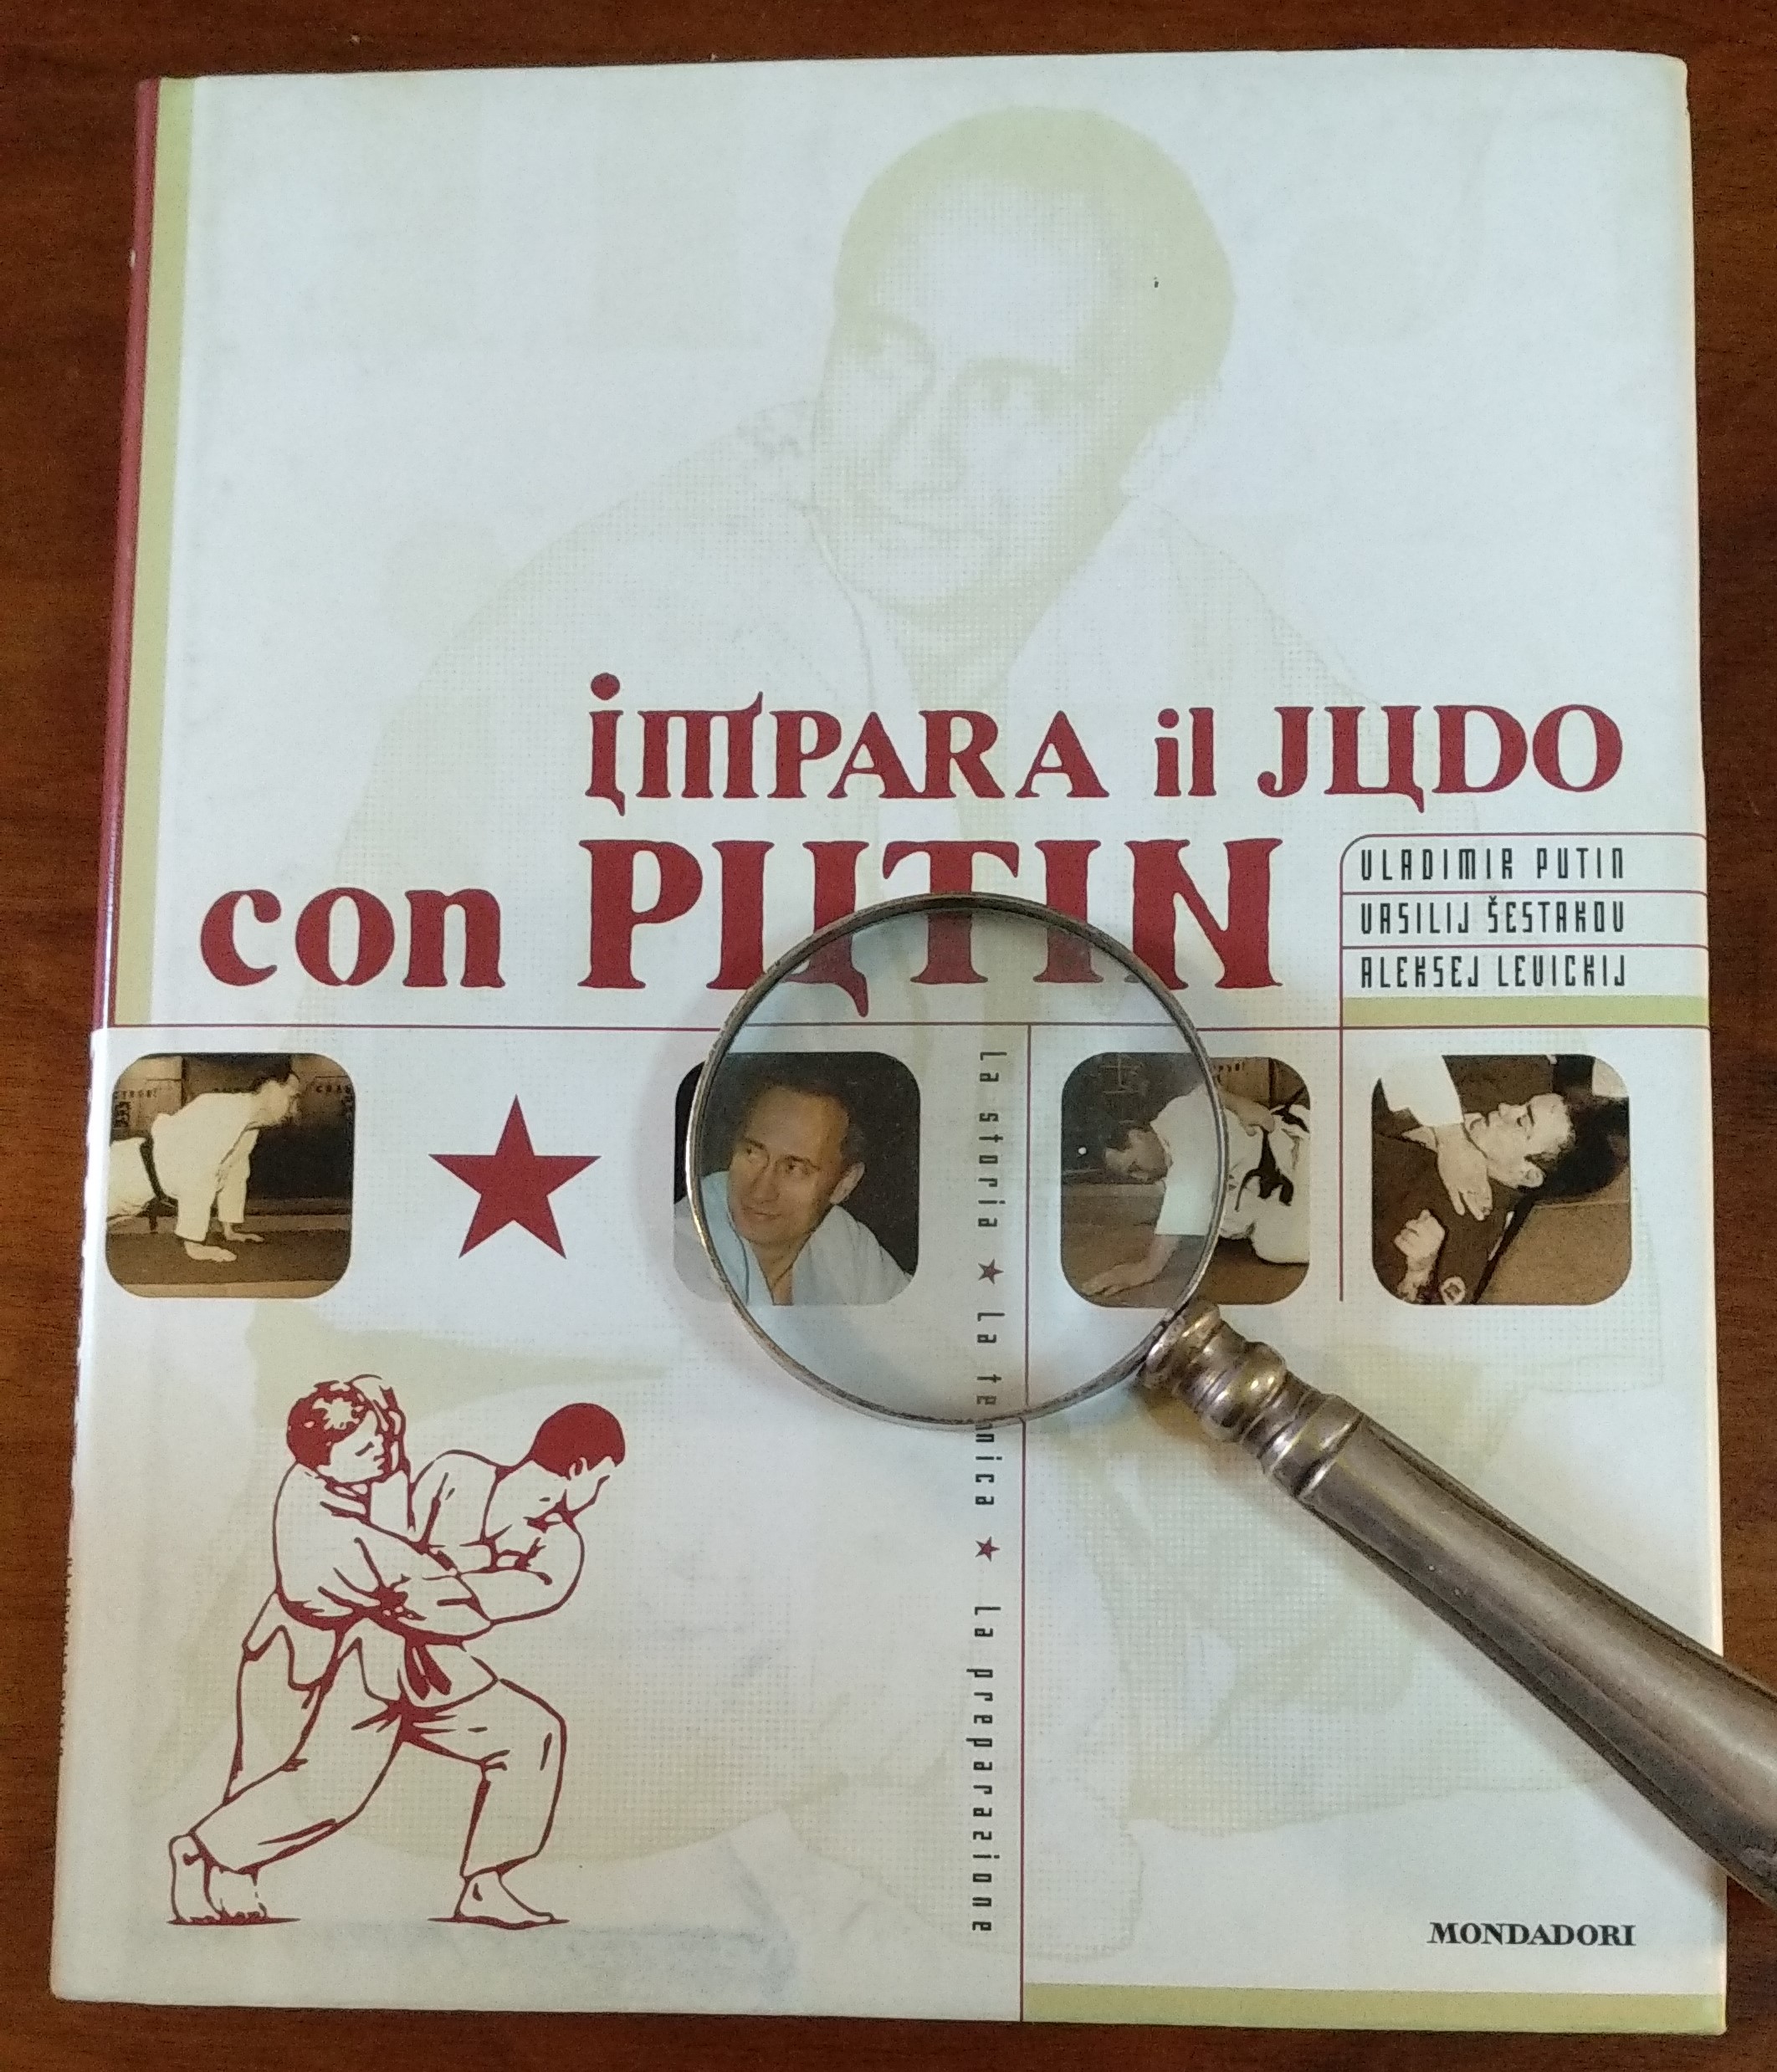 Putin sospeso dalla Federazione mondiale di judo: a ruba le copie del suo libro “Impara il judo con Putin” del 2001